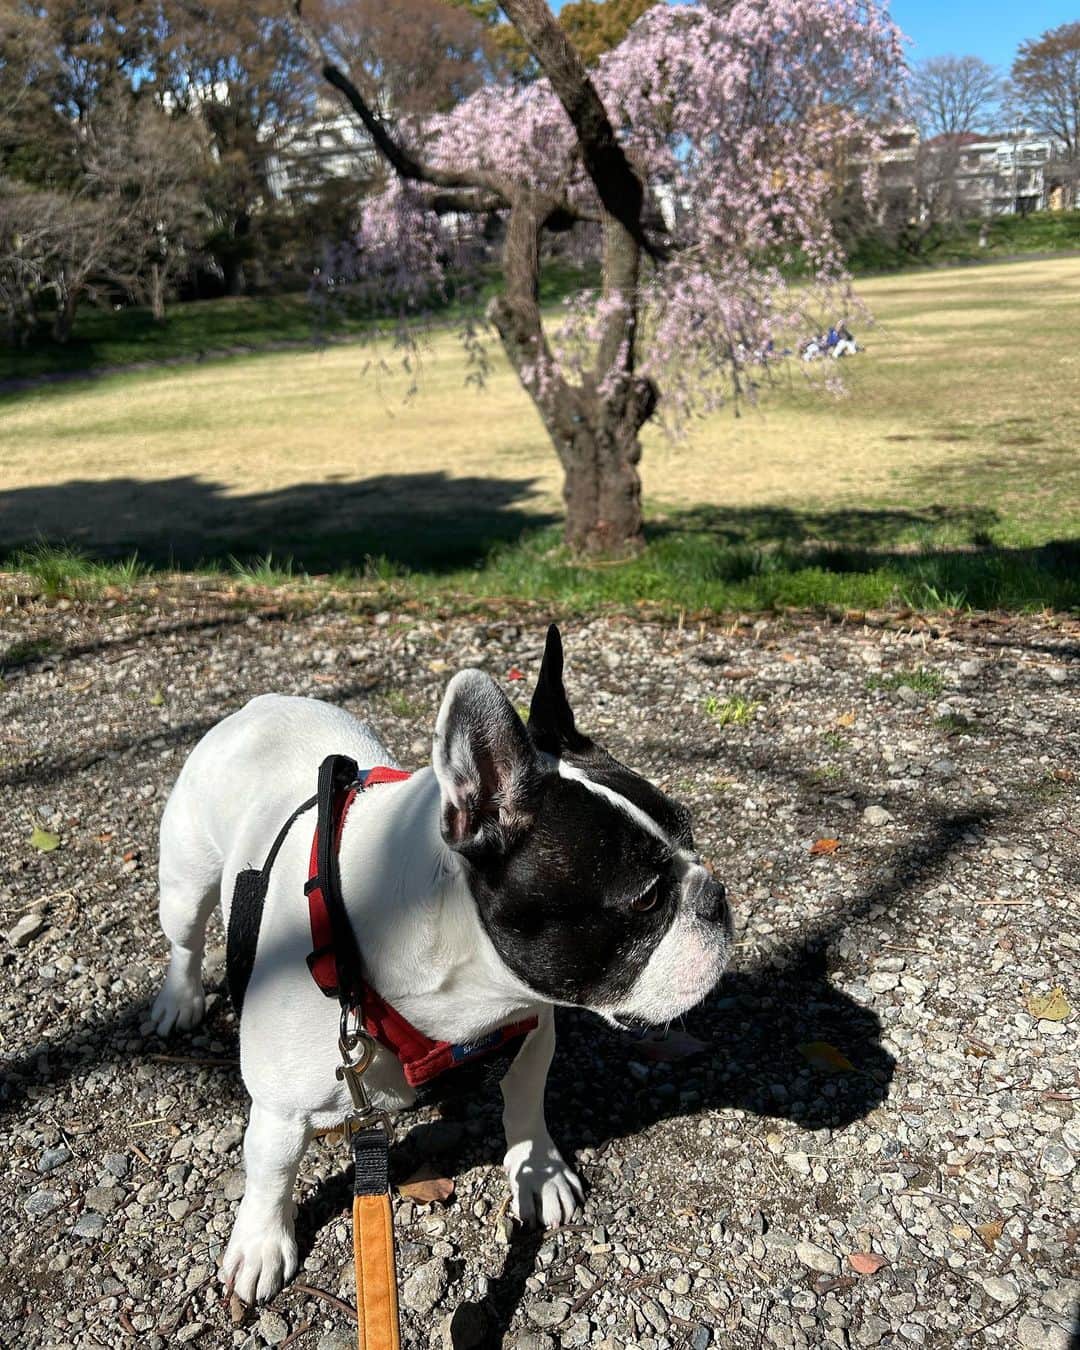 安藤優子のインスタグラム：「枝垂れ桜とアタシ‼️  みなさま、本日はかーさんの出ていた「ワイドなショー」をご覧いただきありがとうゴザイマシタ。  アタシ、リンから御礼申し上げます。  で、さっき某国立大学のグラウンドに昼ンポ行ったら、枝垂れ桜が、とっても綺麗だったよ。  たくさんの人が写真撮っていたよ。  春だよねー。  で昨晩のテーブルもアタシからご紹介シマス。  昨日はね、鰤のアラが安ーく手になる入ったって、嬉しそうにぶり大根作っていたよ。  鰤は熱湯をくぐらせてから、よーく洗って、それから煮汁に入れていたよ。  煮汁にはおかーさんがドボドボと日本酒入れてた。あとはお醤油とみりん、生姜いっぱいと長ネギの青いところも入れていた。  灰汁を取ってから大根を入れてコトコトしていたらしい。  アタシは薪ストーブ横にて爆睡（笑）  あとは、大根とラディッシュのサラダ。  これ自信作だって（笑）  大根とラディッシュを千切りにして、玉ねぎのスライスと、ラディッシュの葉っぱも合わせて、ベーコンをカリカリに焼いてからそこにホワイトバルサミコ酢を入れた熱々のドレッシングをかけていたよ。  シャキシャキ美味しかったって。  でも鰤大根は、アラを使ったからとーさんには「食べ応えがない」と言われていた。  なーんにも落ちてこないよりは、ずーとマシだと思うけどね（笑）  あとはナスの揚げ浸しなど、だったそうです。  なんたって落ちてこないからゼンヨウ(全容)が分かんないもんねー。  そんな昨晩のテーブルでした！  以上、何もまたもや落ちては来なかった現場からお伝えしました。  byリンゴ！  #鰤大根   #フレンチブルドッグ  #安藤優子」